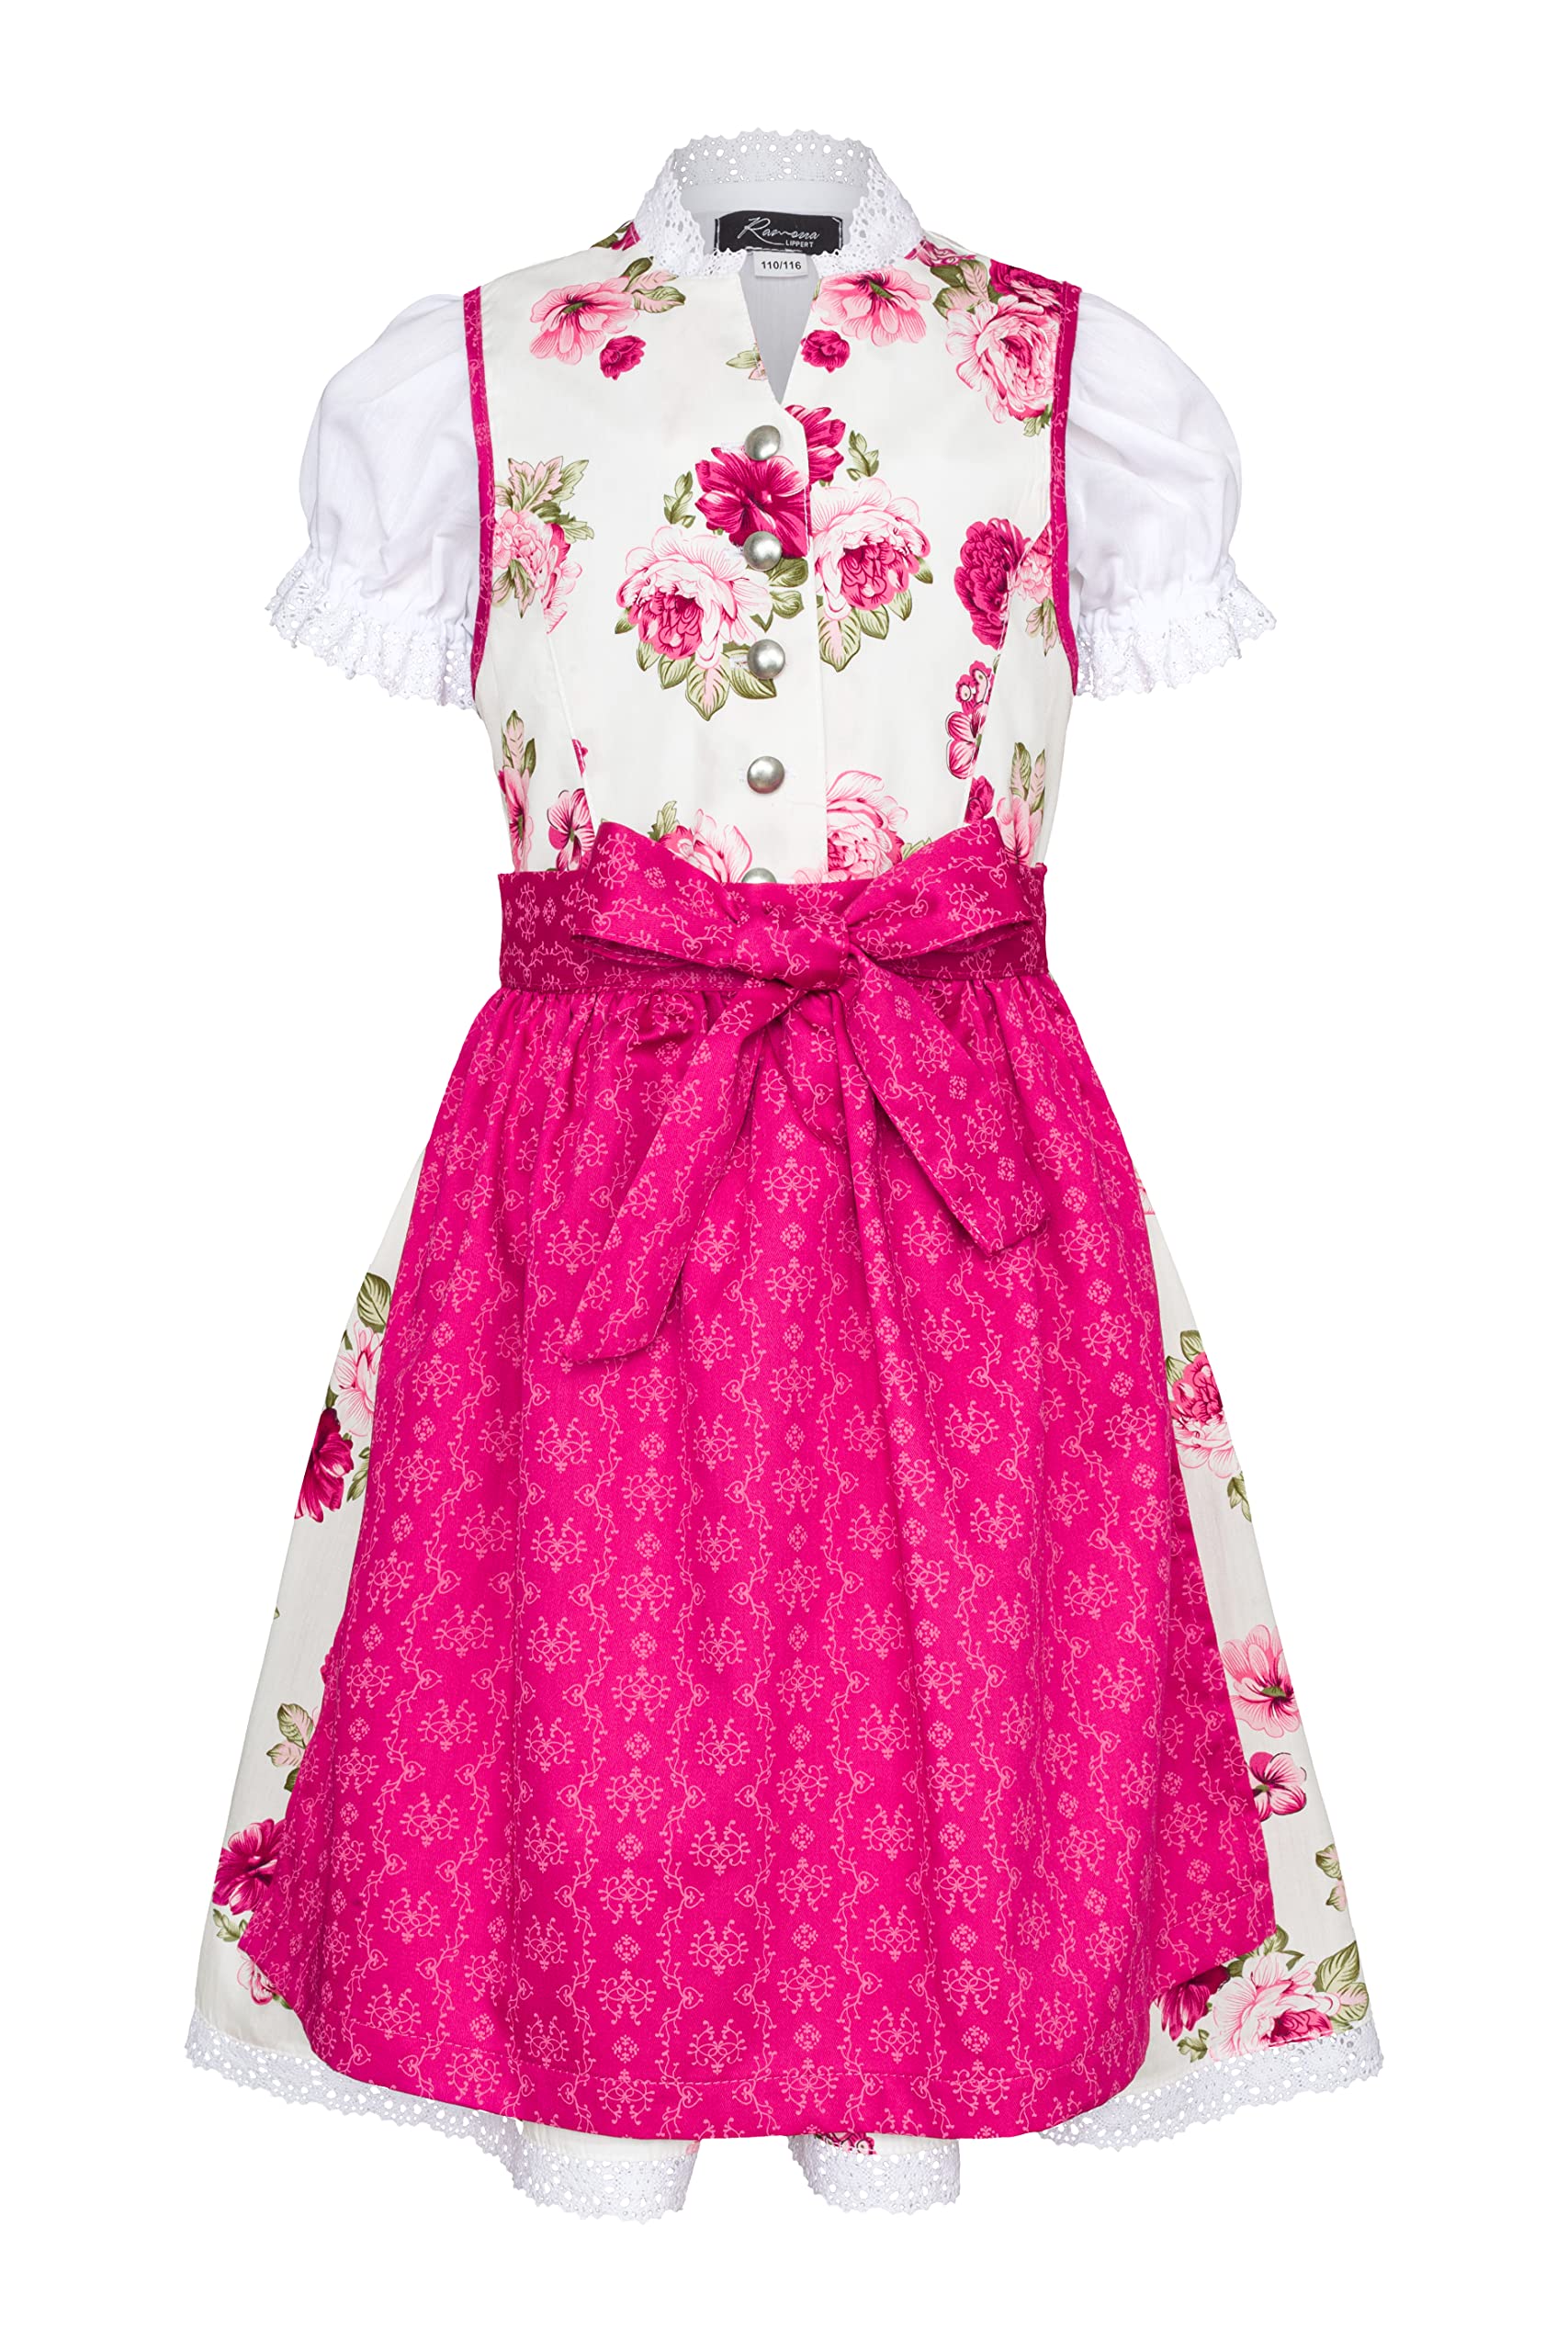 Ramona Lippert® - Kinder Dirndl Für Mädchen - Dirndl Set Tami - Pink + Weiß mit Rosen Bedruckt - Inkl. Kleid, Schürze & Bluse - Festliche Tracht - Größe 86 bis 164 (146/152)